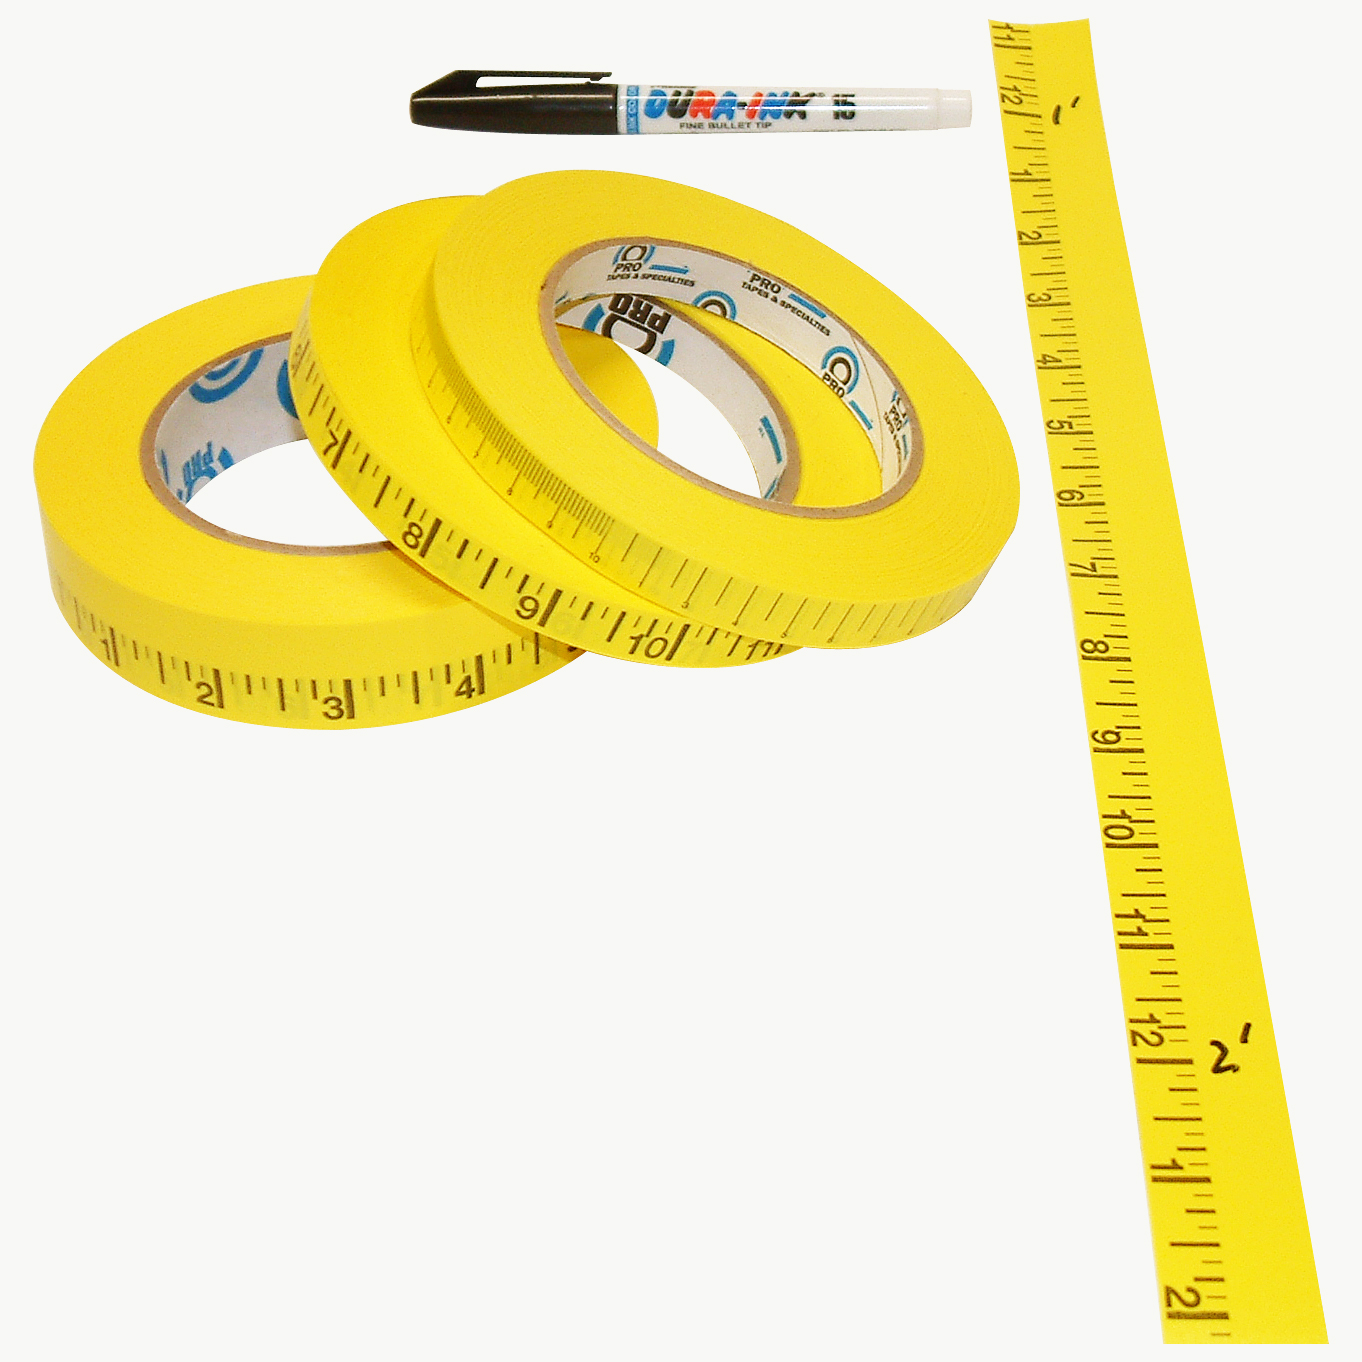 Pro Tapes Pro-Measurement Ruler Tape